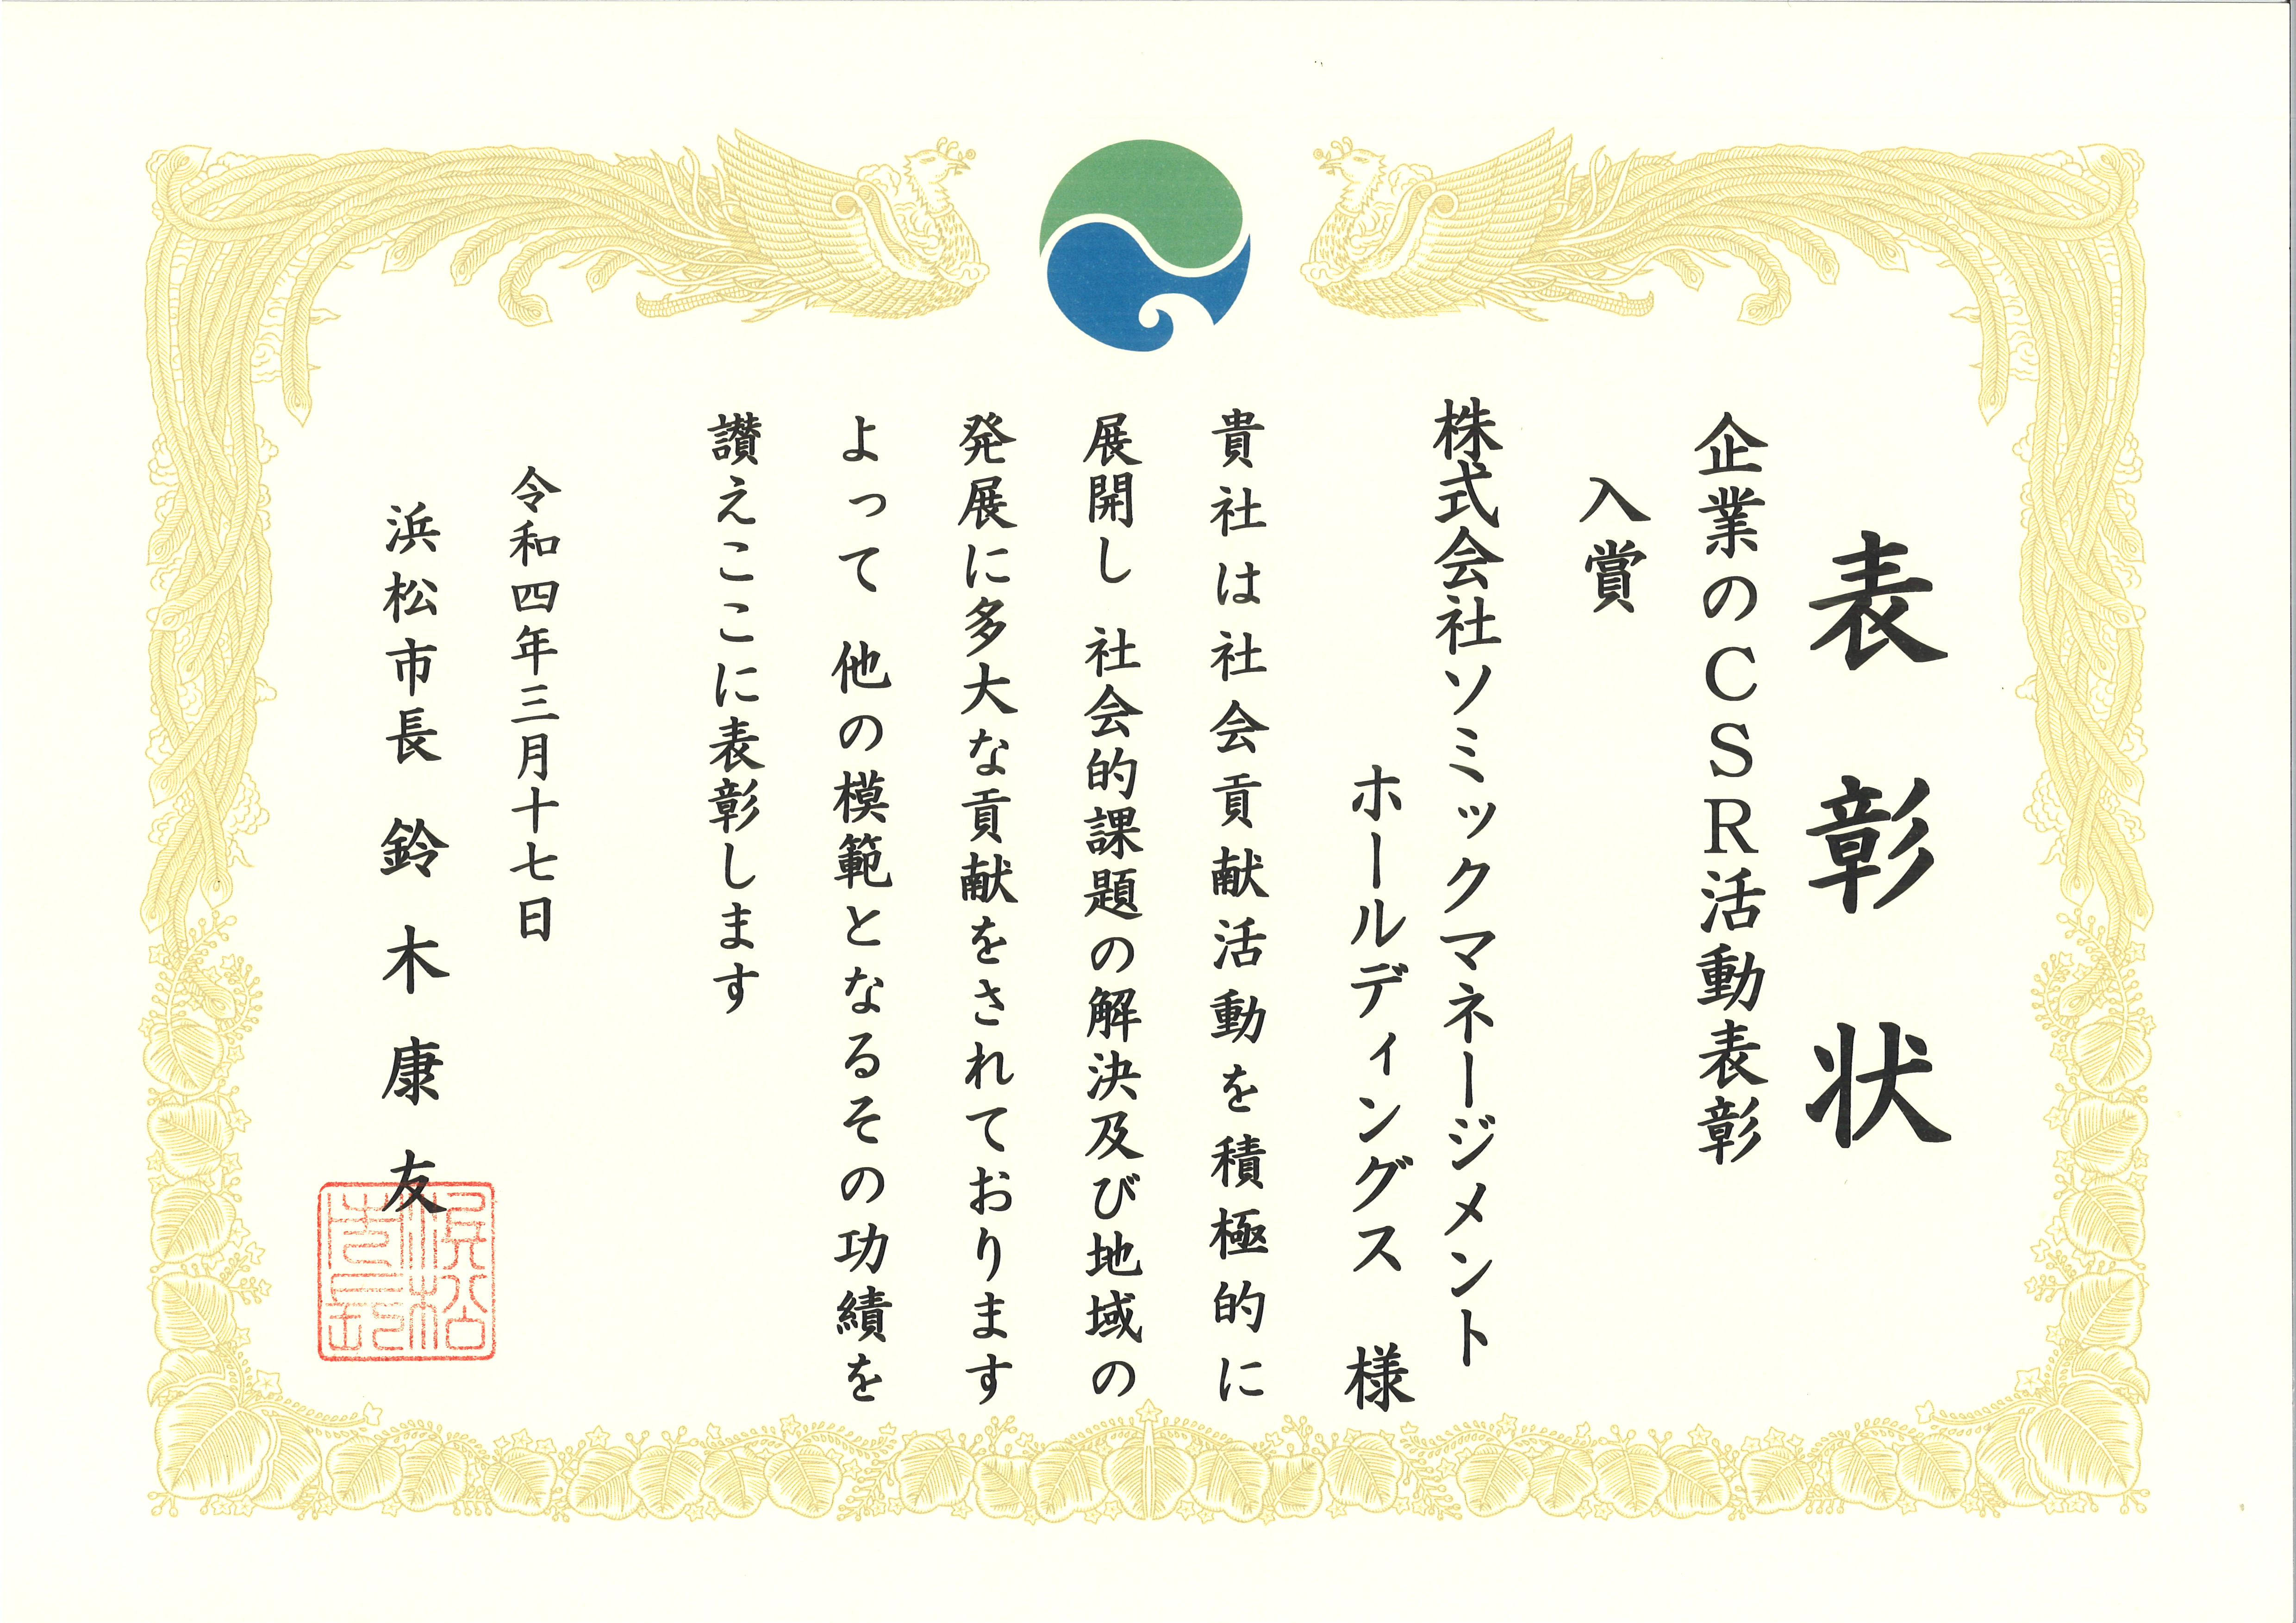 ソミックマネージメントホールディングス、浜松市企業のCSR活動表彰で入賞